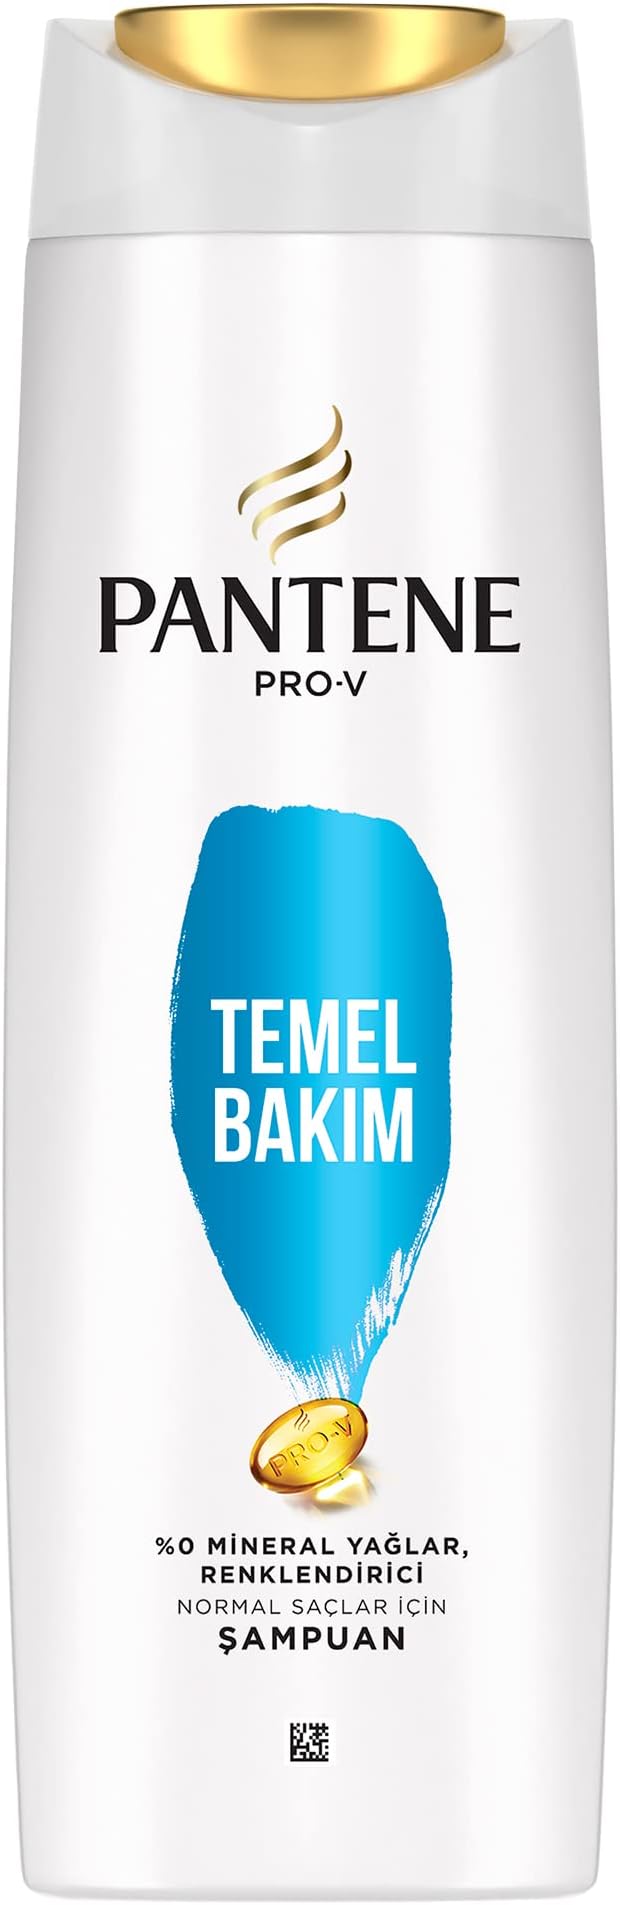 شامپو سر پنتن مدل Temel Bakim مناسب موهای معمولی 350میل